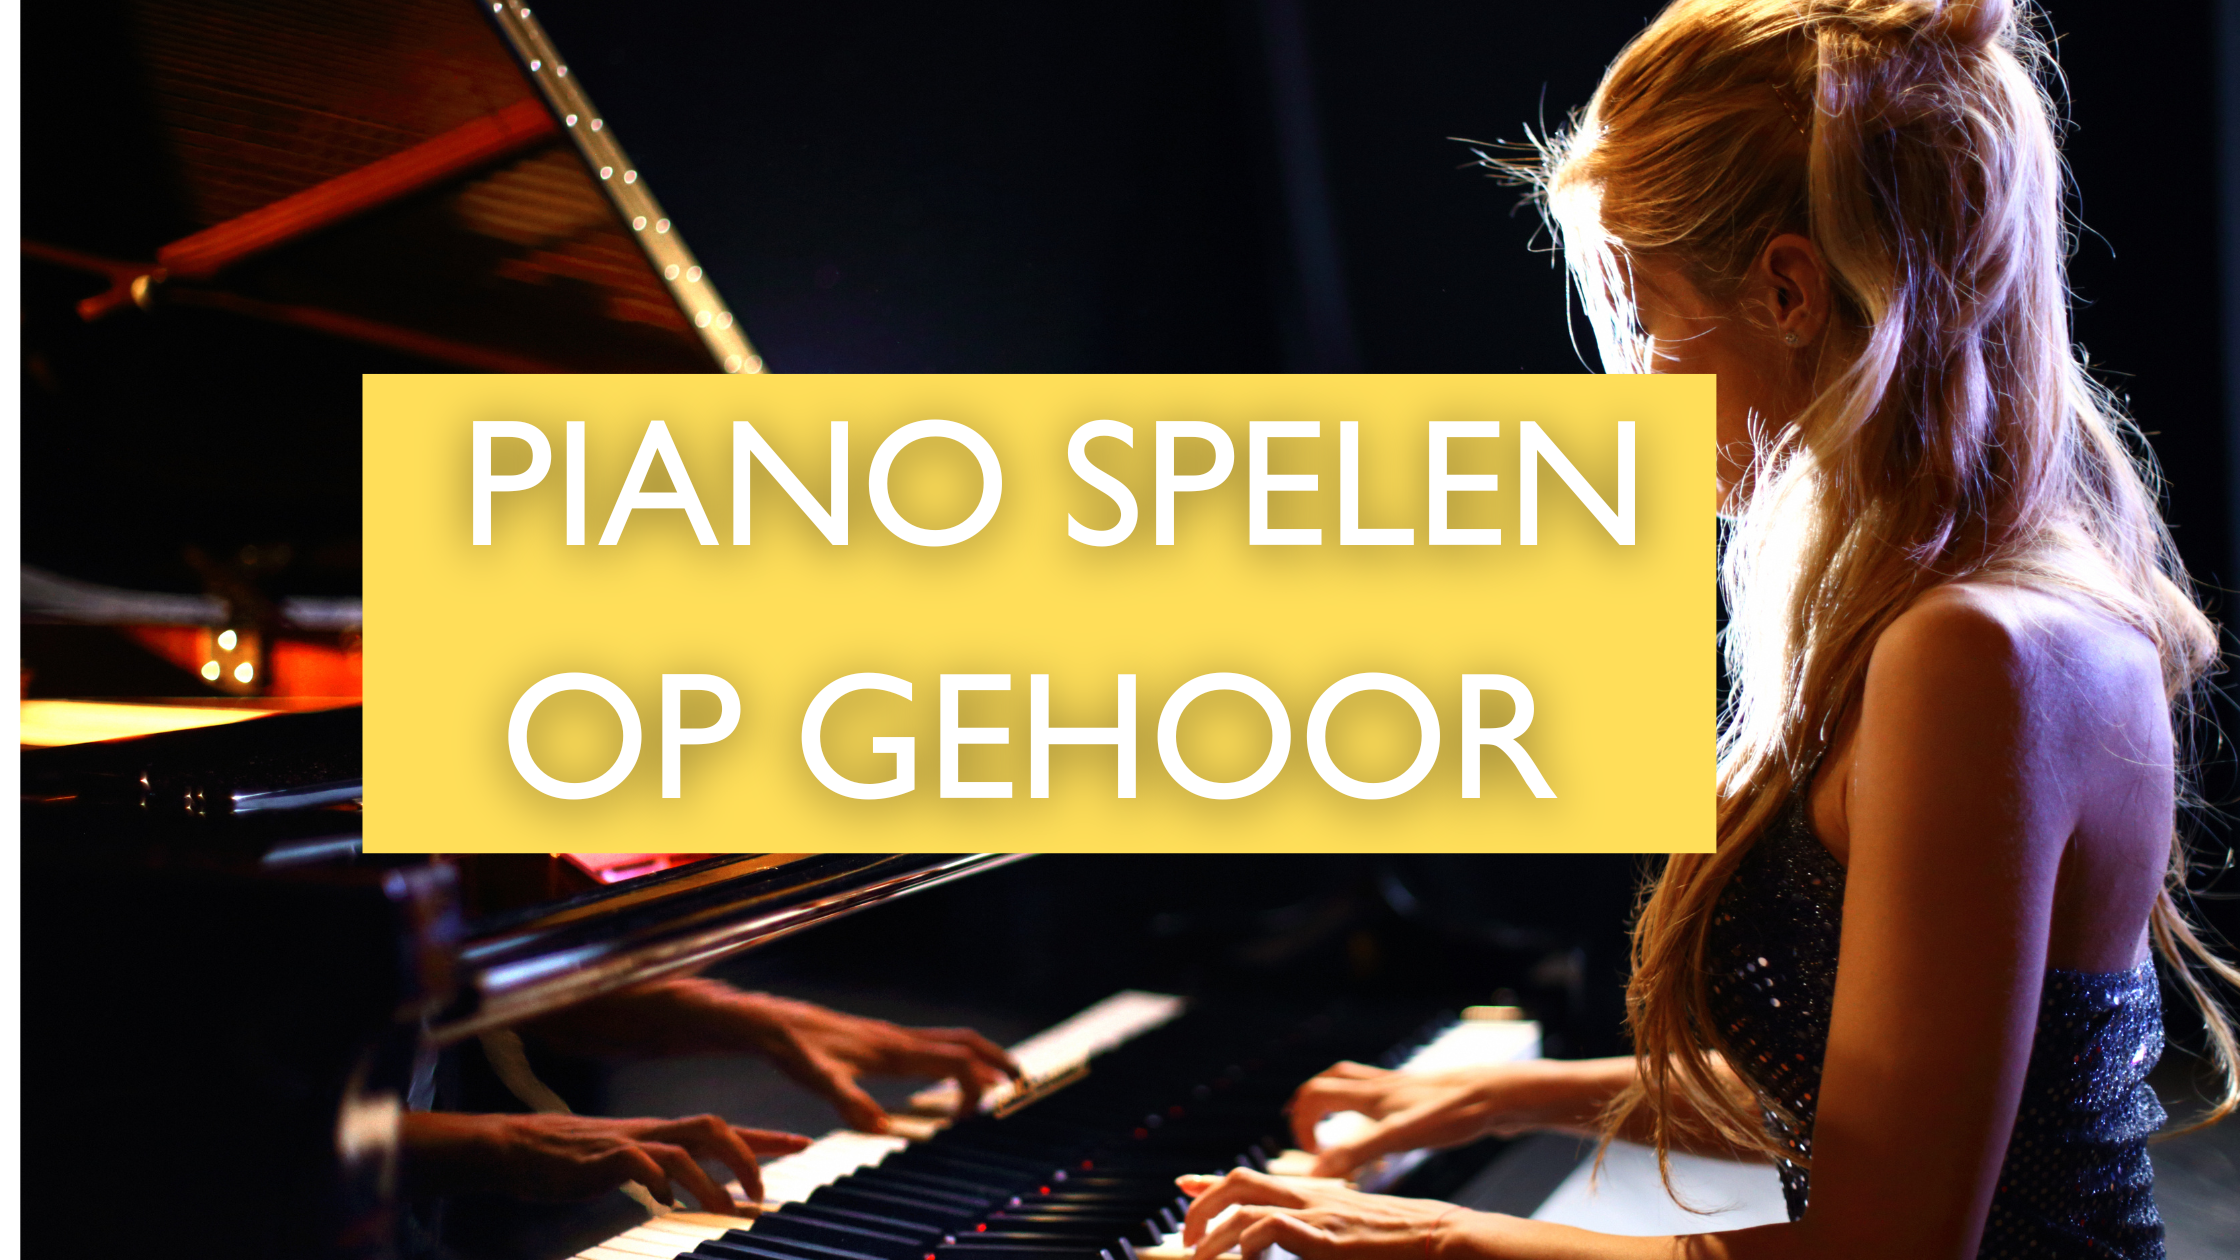 Piano spelen op gehoor: Ontdek de geheimen en wordt een meester